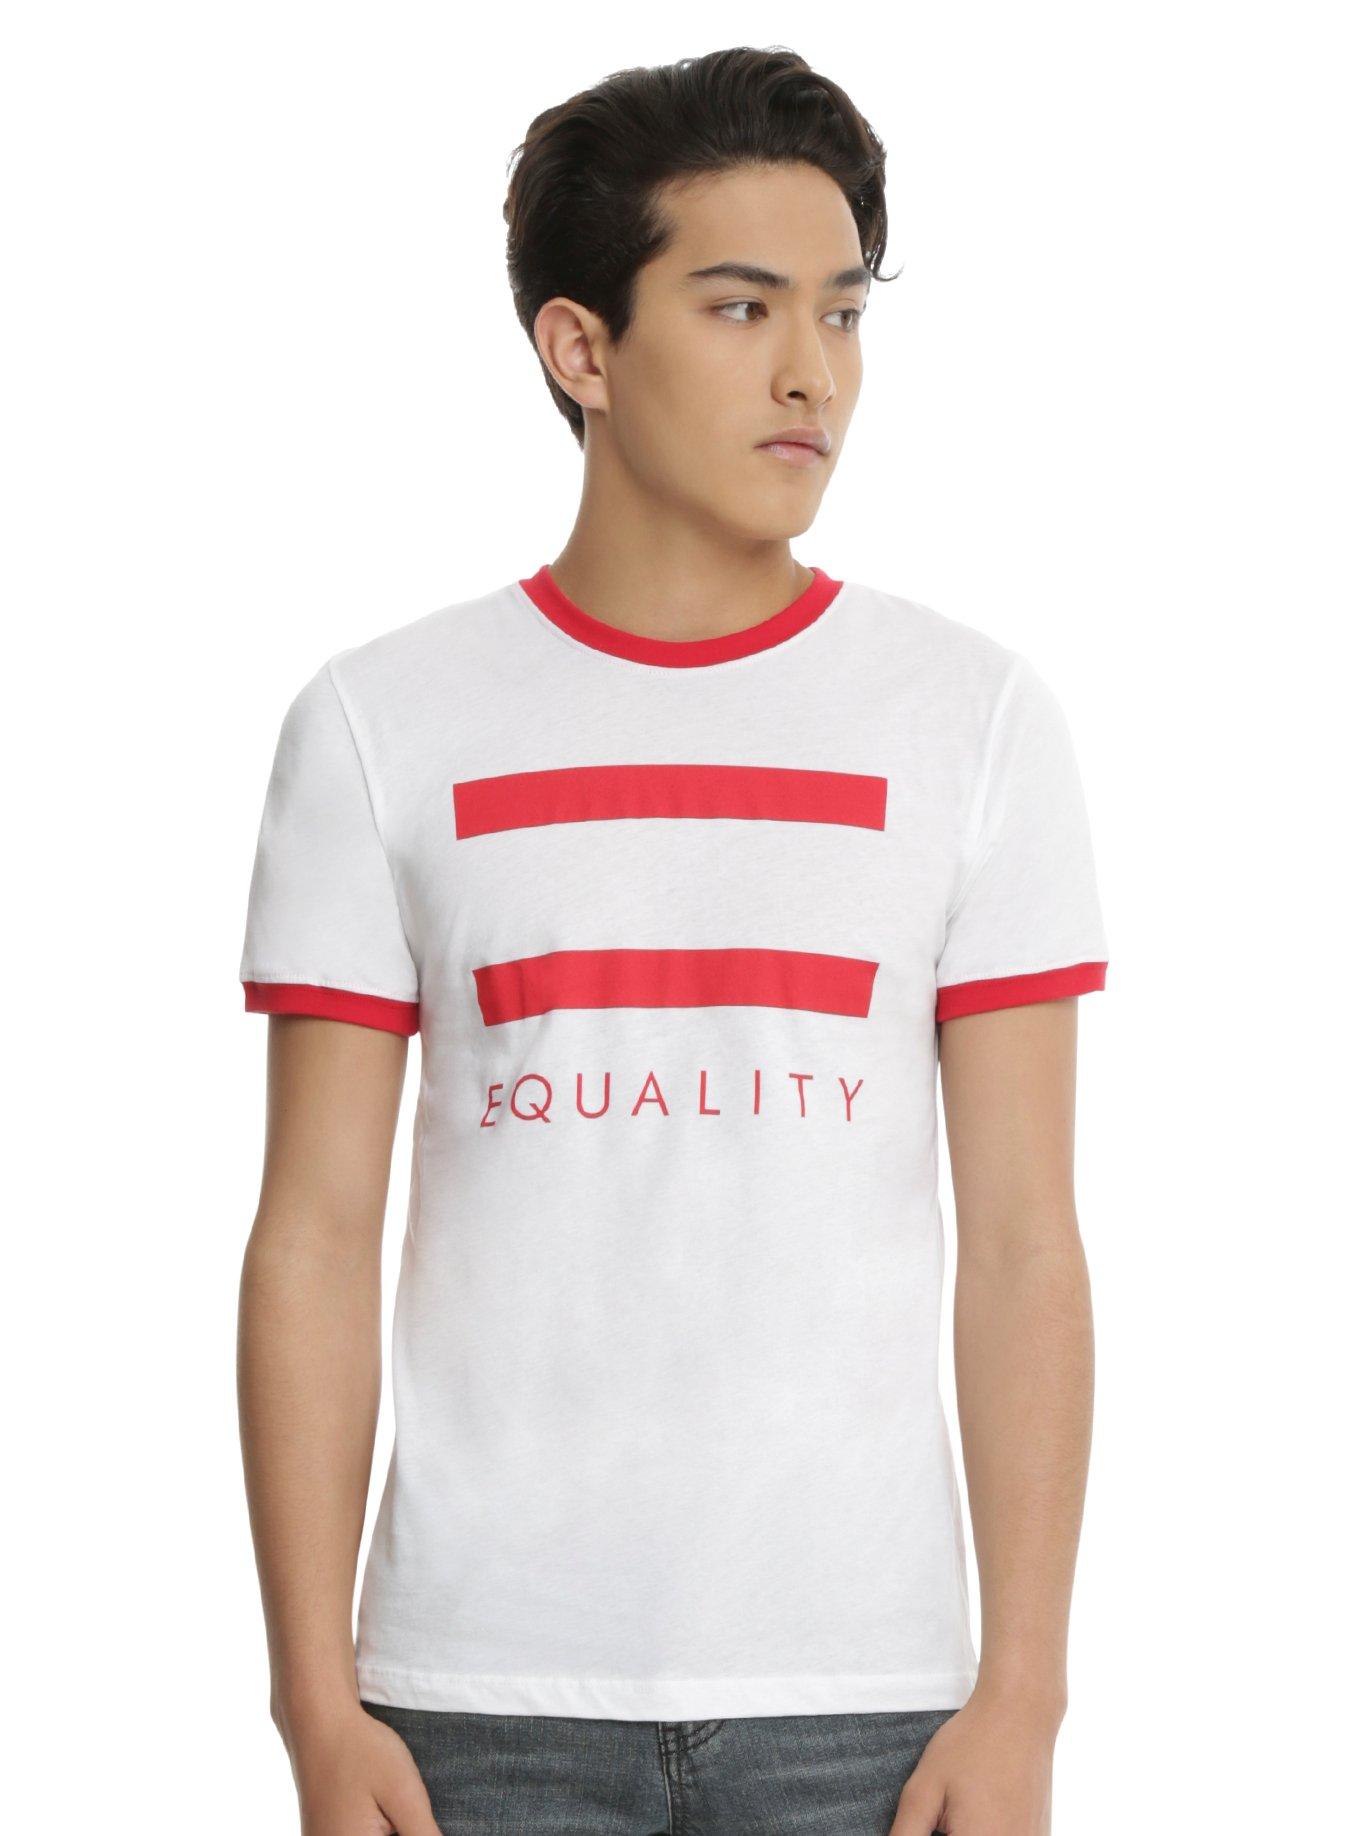 Equality Ringer T-Shirt, WHITE, hi-res